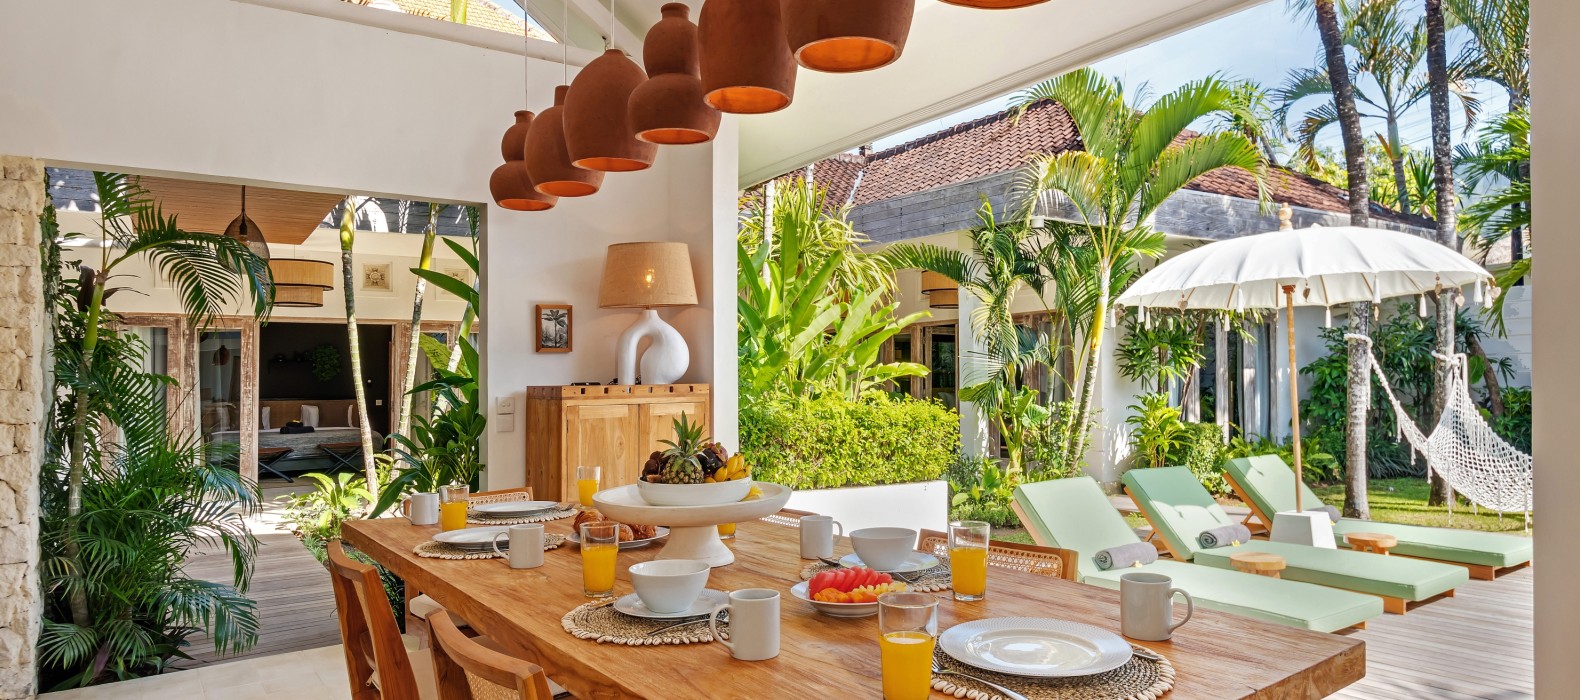 Dining table of Villa Gauguin in Bali